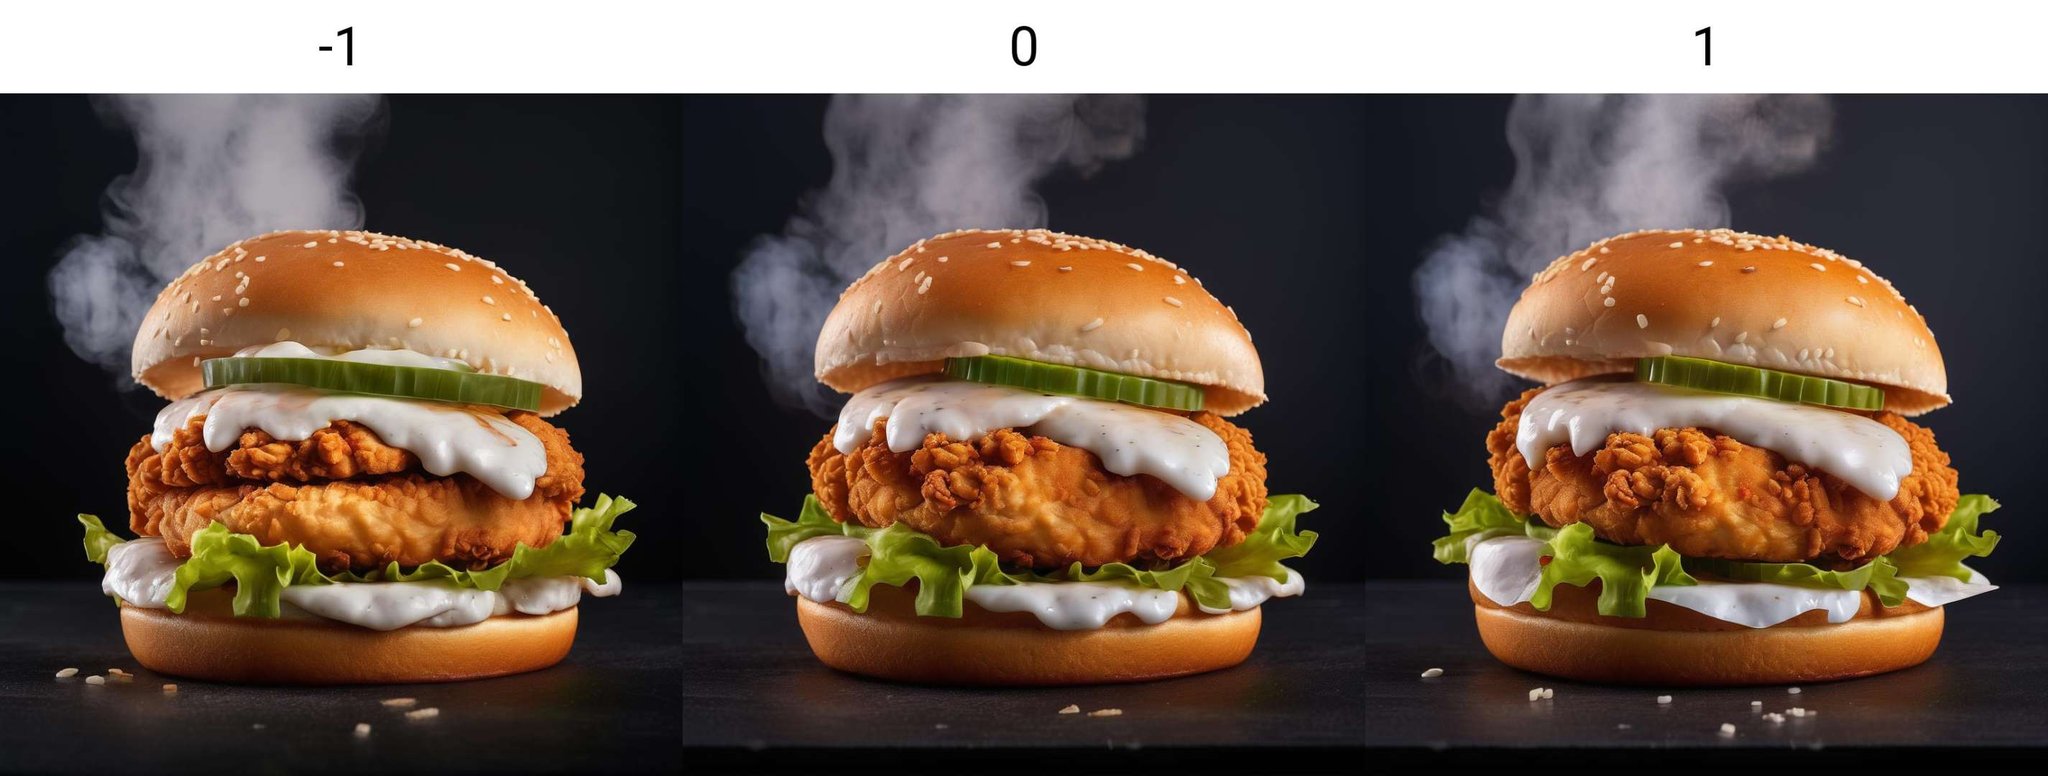 kfc chicken burger, dark background, quality photo, fried chicken, studio photo, steaming<lora:neg4all_bdsqlsz_xl_V7:-1>, 